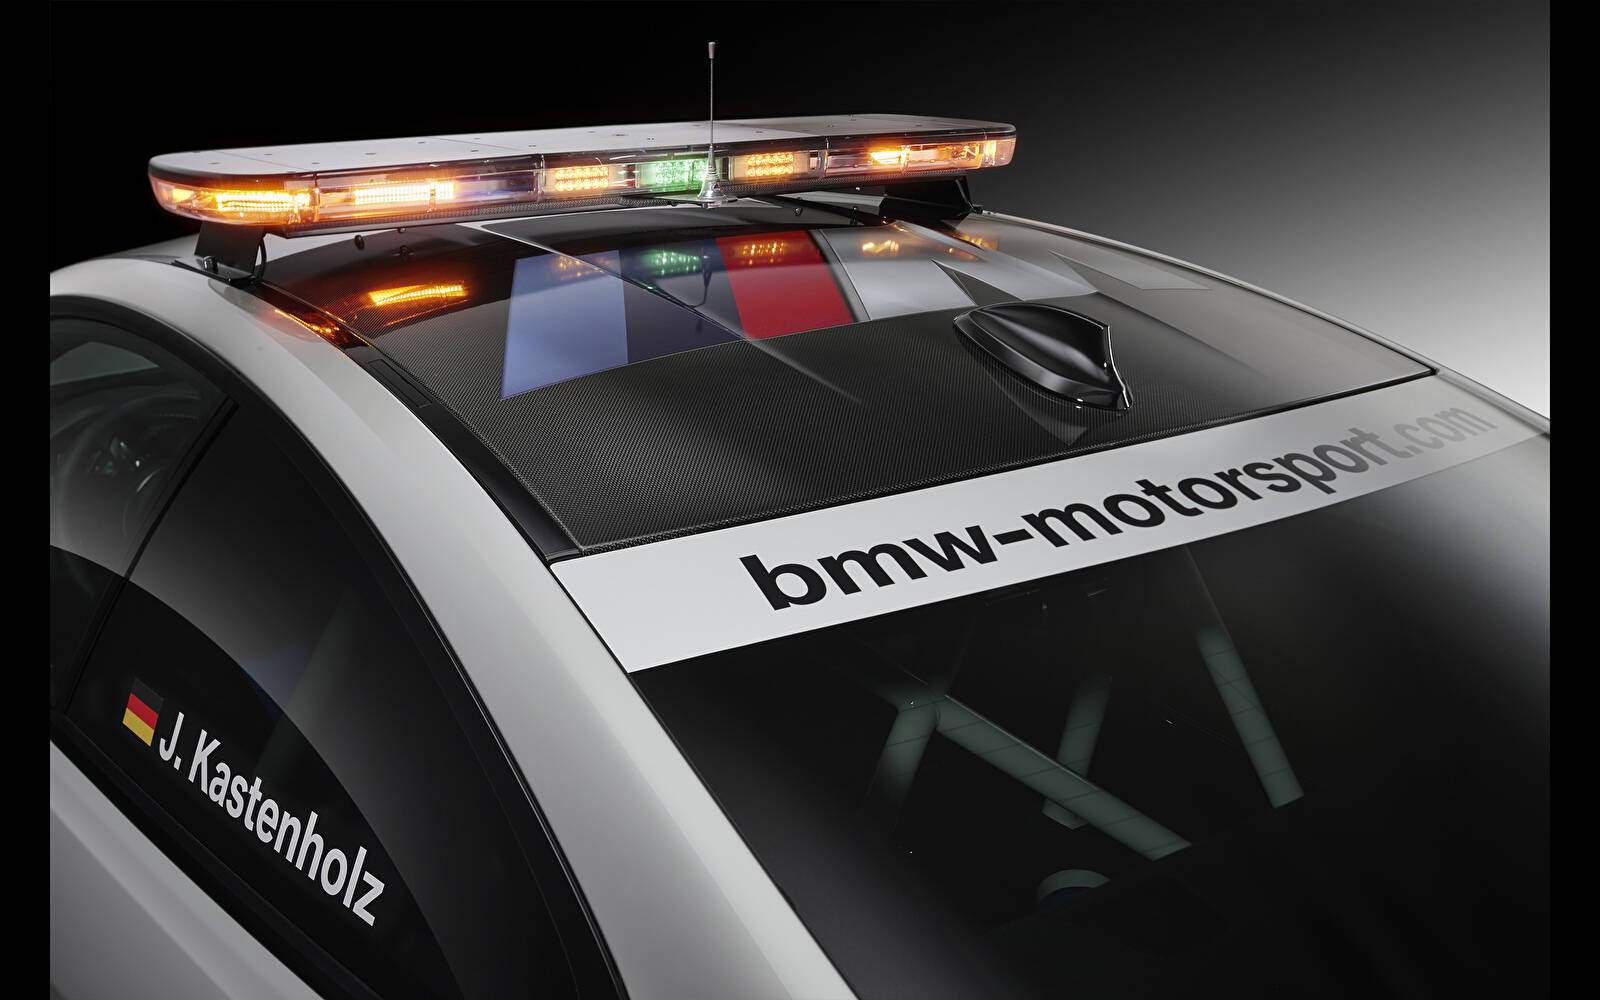 BMW M4 Coupé (F82) « DTM Safety Car » (2014-2015),  ajouté par fox58